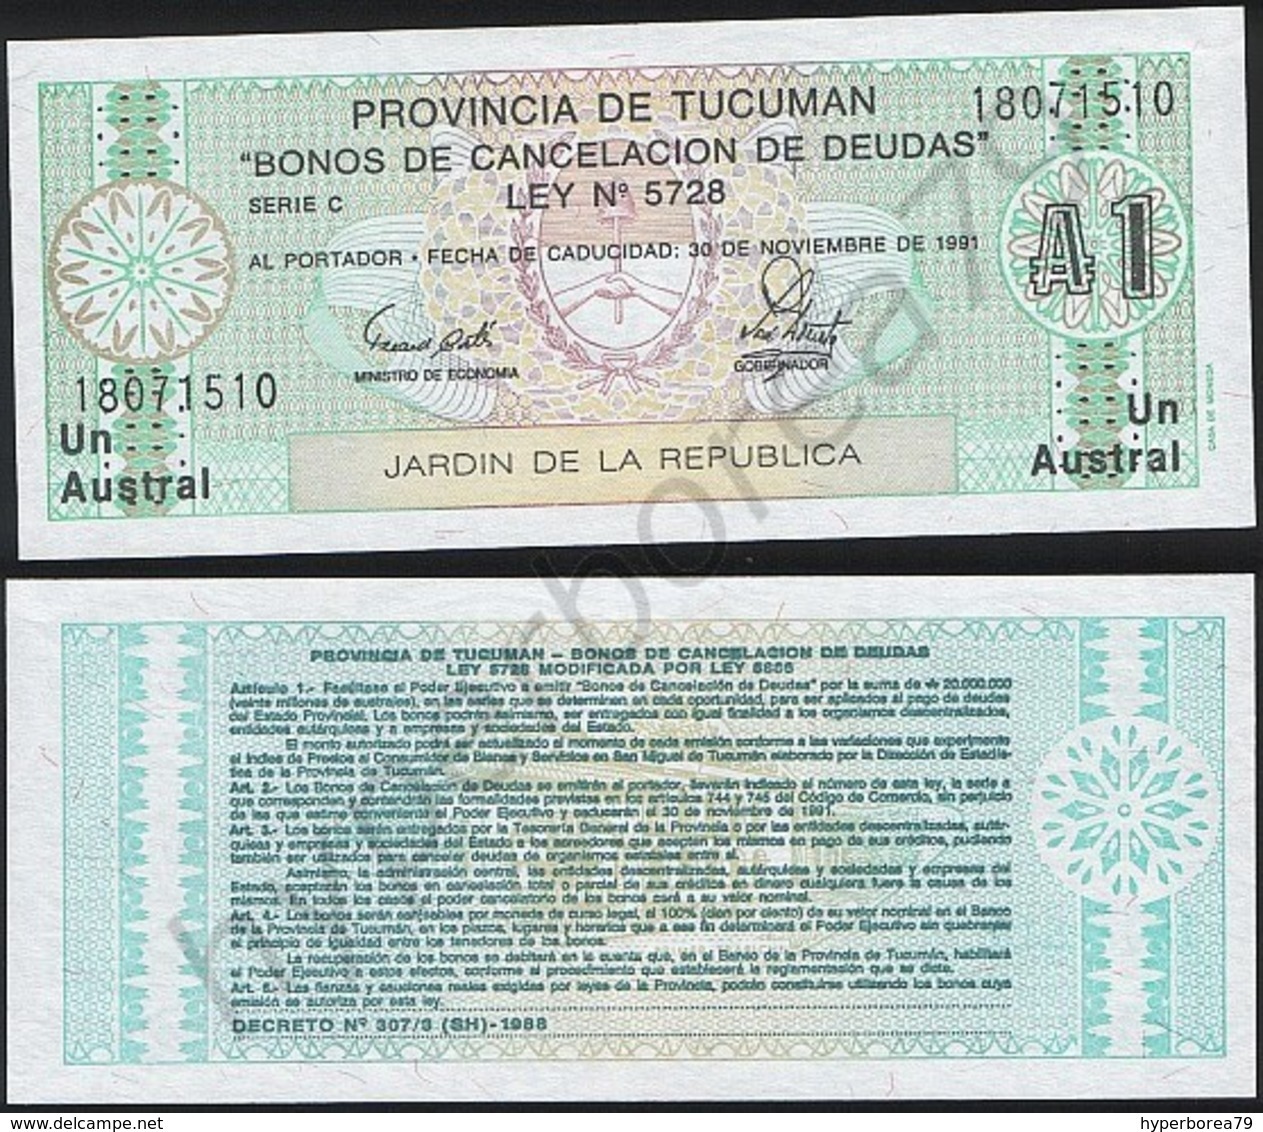 Argentina ( Tucuman ) P S2711 - 1 Austral 30.11.1991 - UNC - Argentina